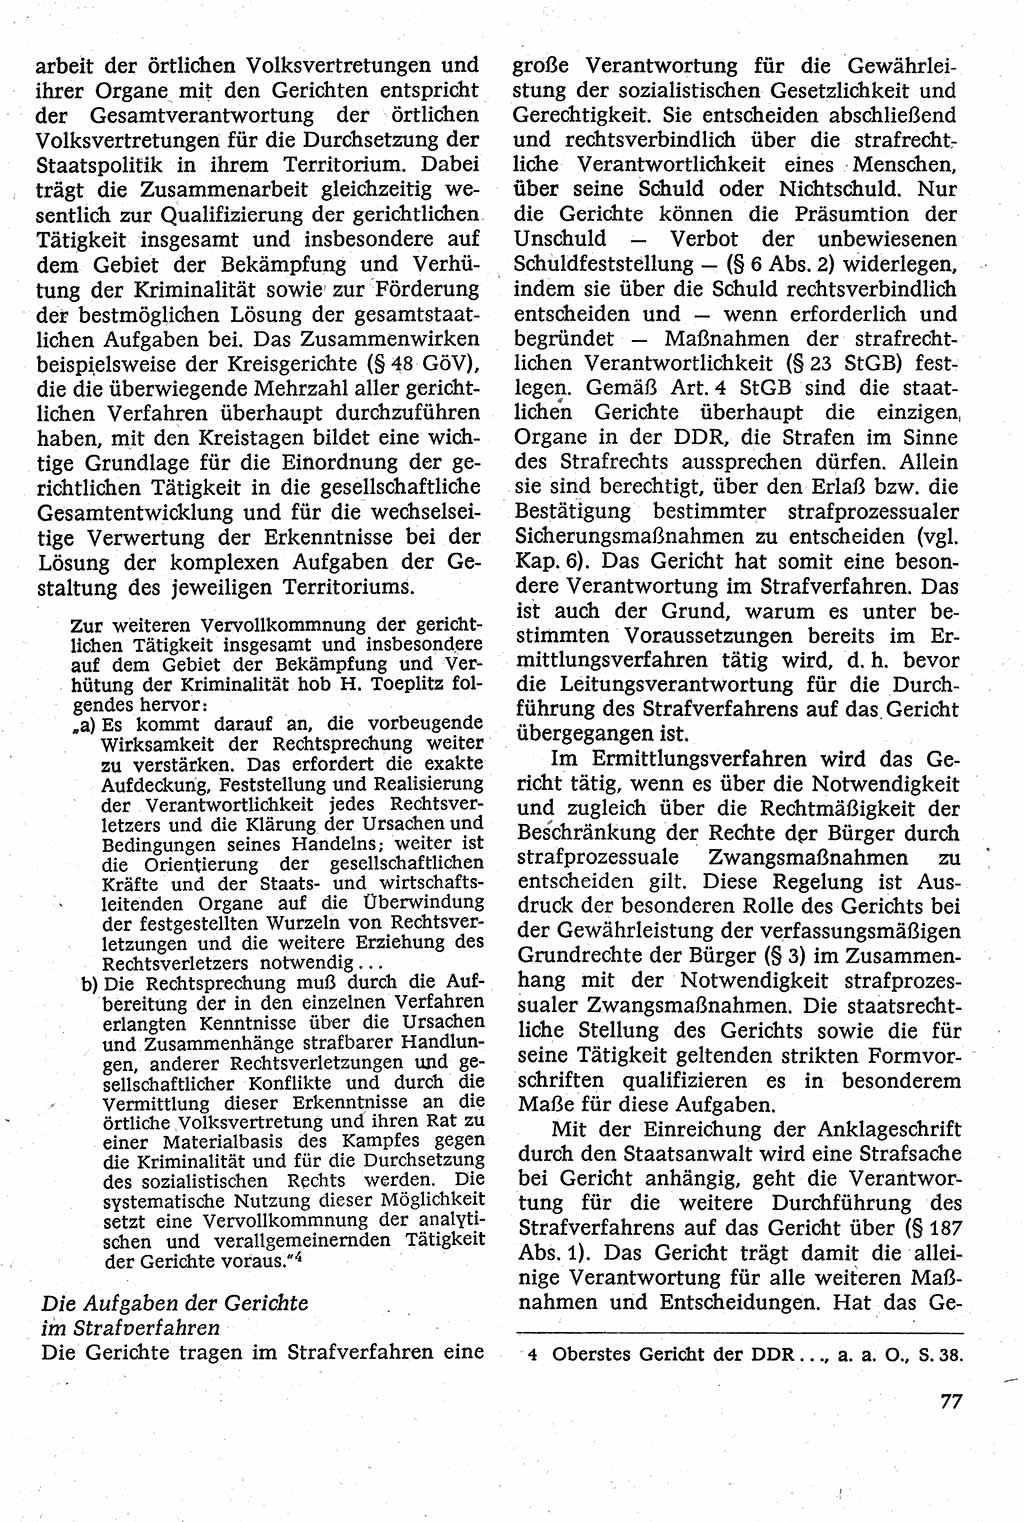 Strafverfahrensrecht [Deutsche Demokratische Republik (DDR)], Lehrbuch 1982, Seite 77 (Strafverf.-R. DDR Lb. 1982, S. 77)